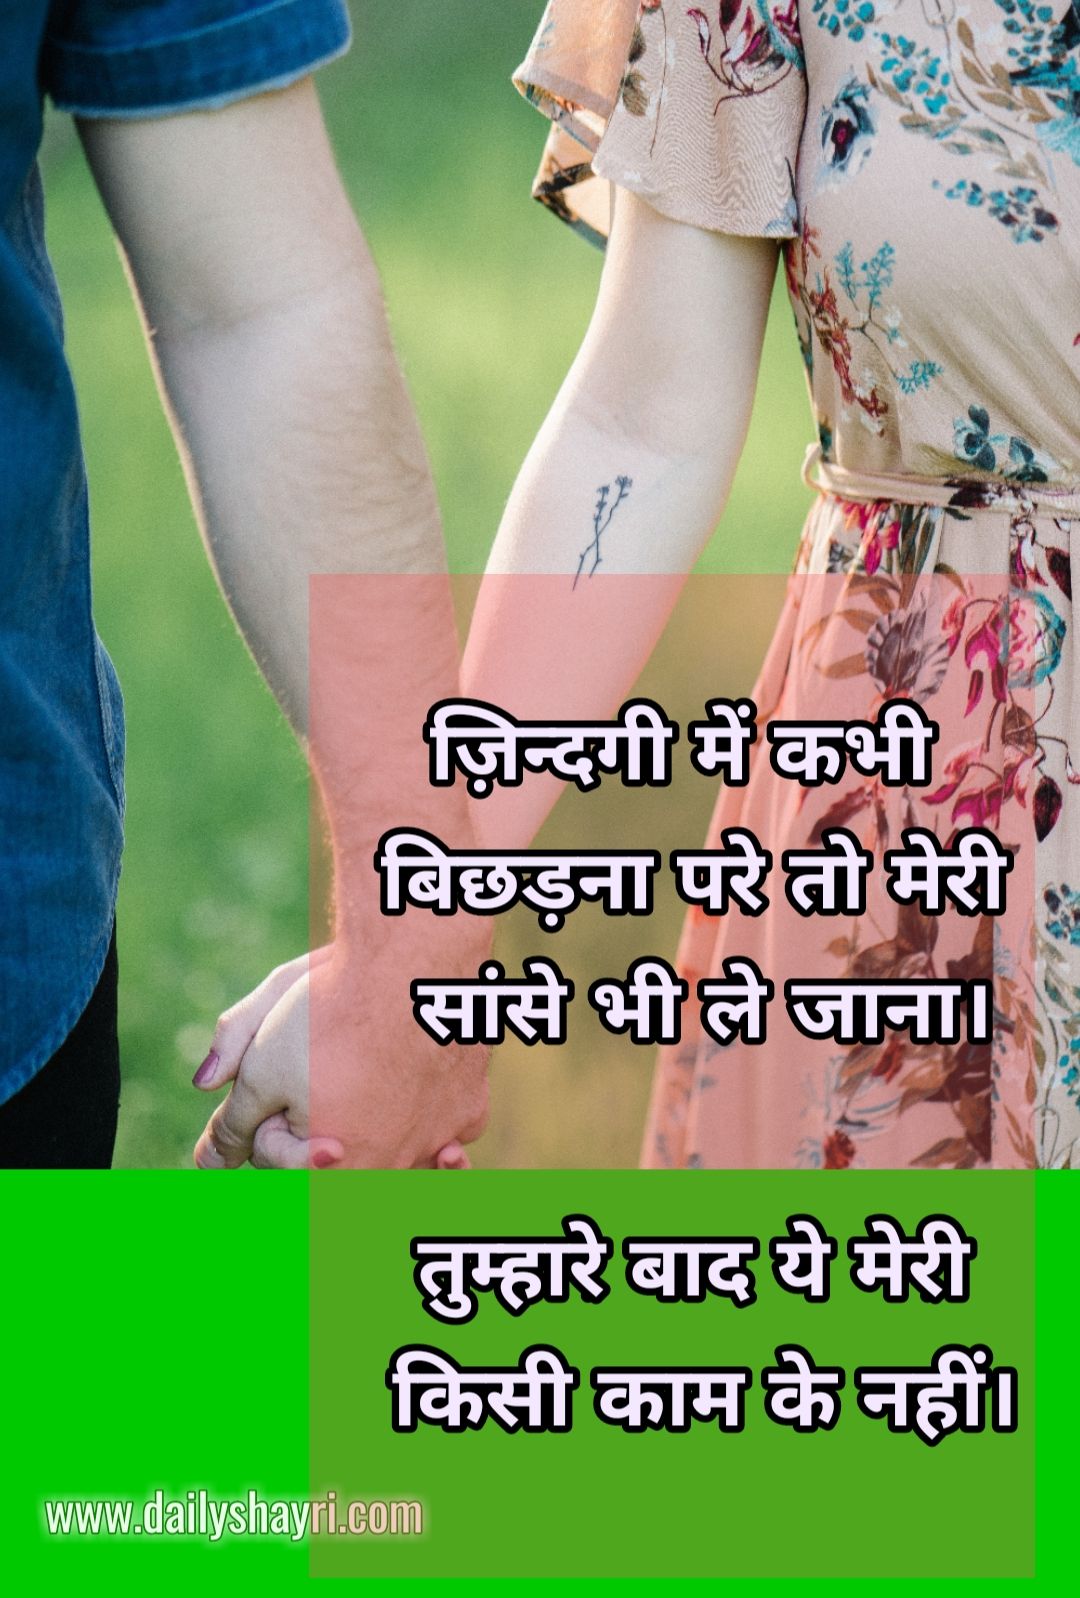 Sad Hindi Shayari images hd – Hindi Shayari Love Shayari Love Quotes Hd Images